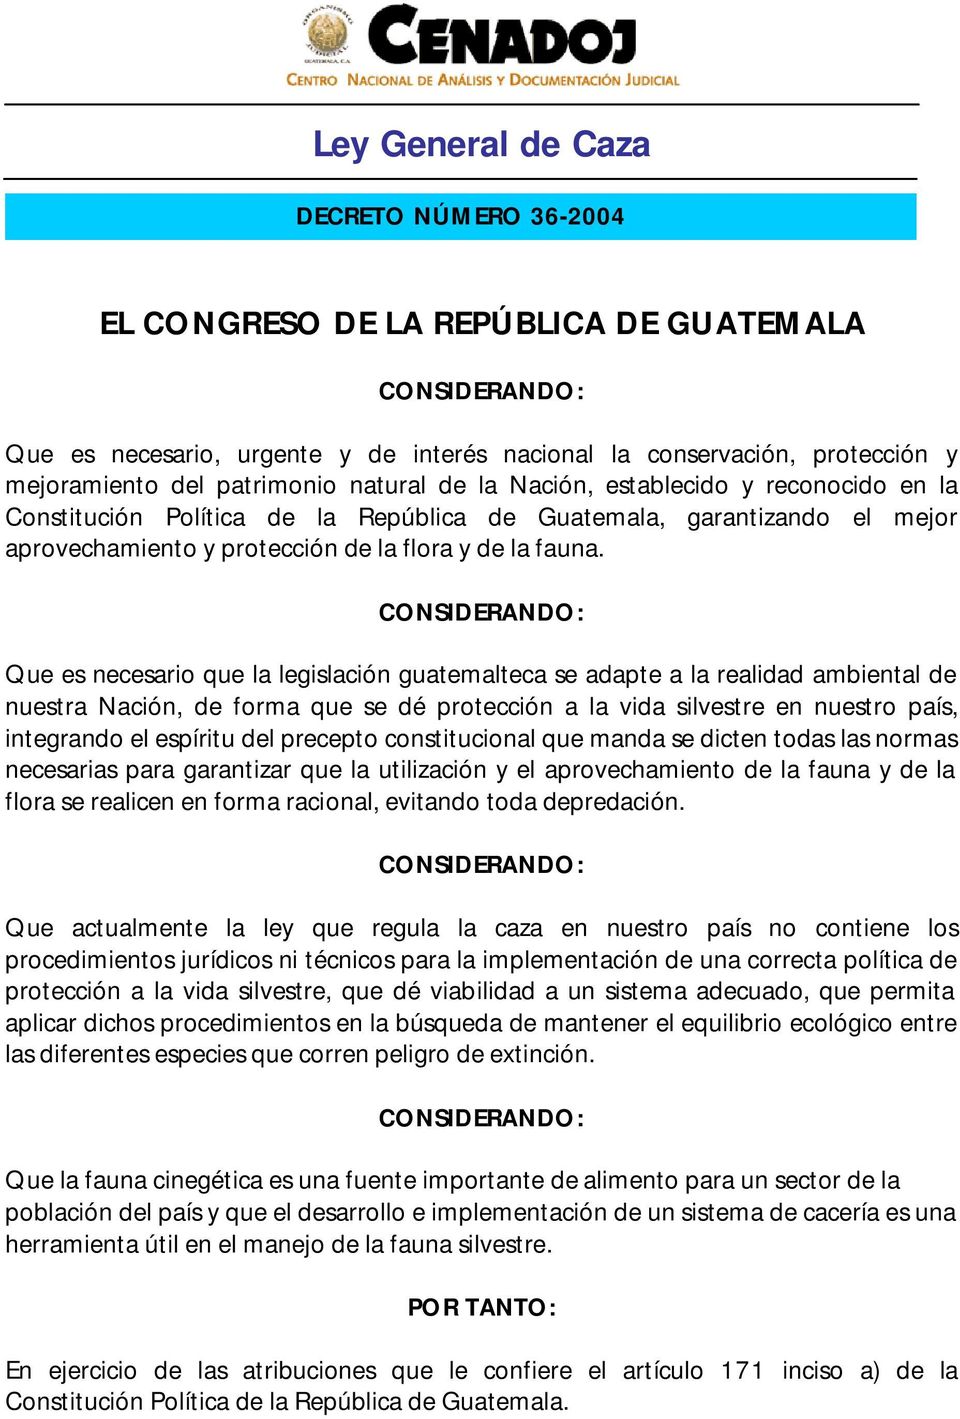 CONSIDERANDO: Que es necesario que la legislación guatemalteca se adapte a la realidad ambiental de nuestra Nación, de forma que se dé protección a la vida silvestre en nuestro país, integrando el